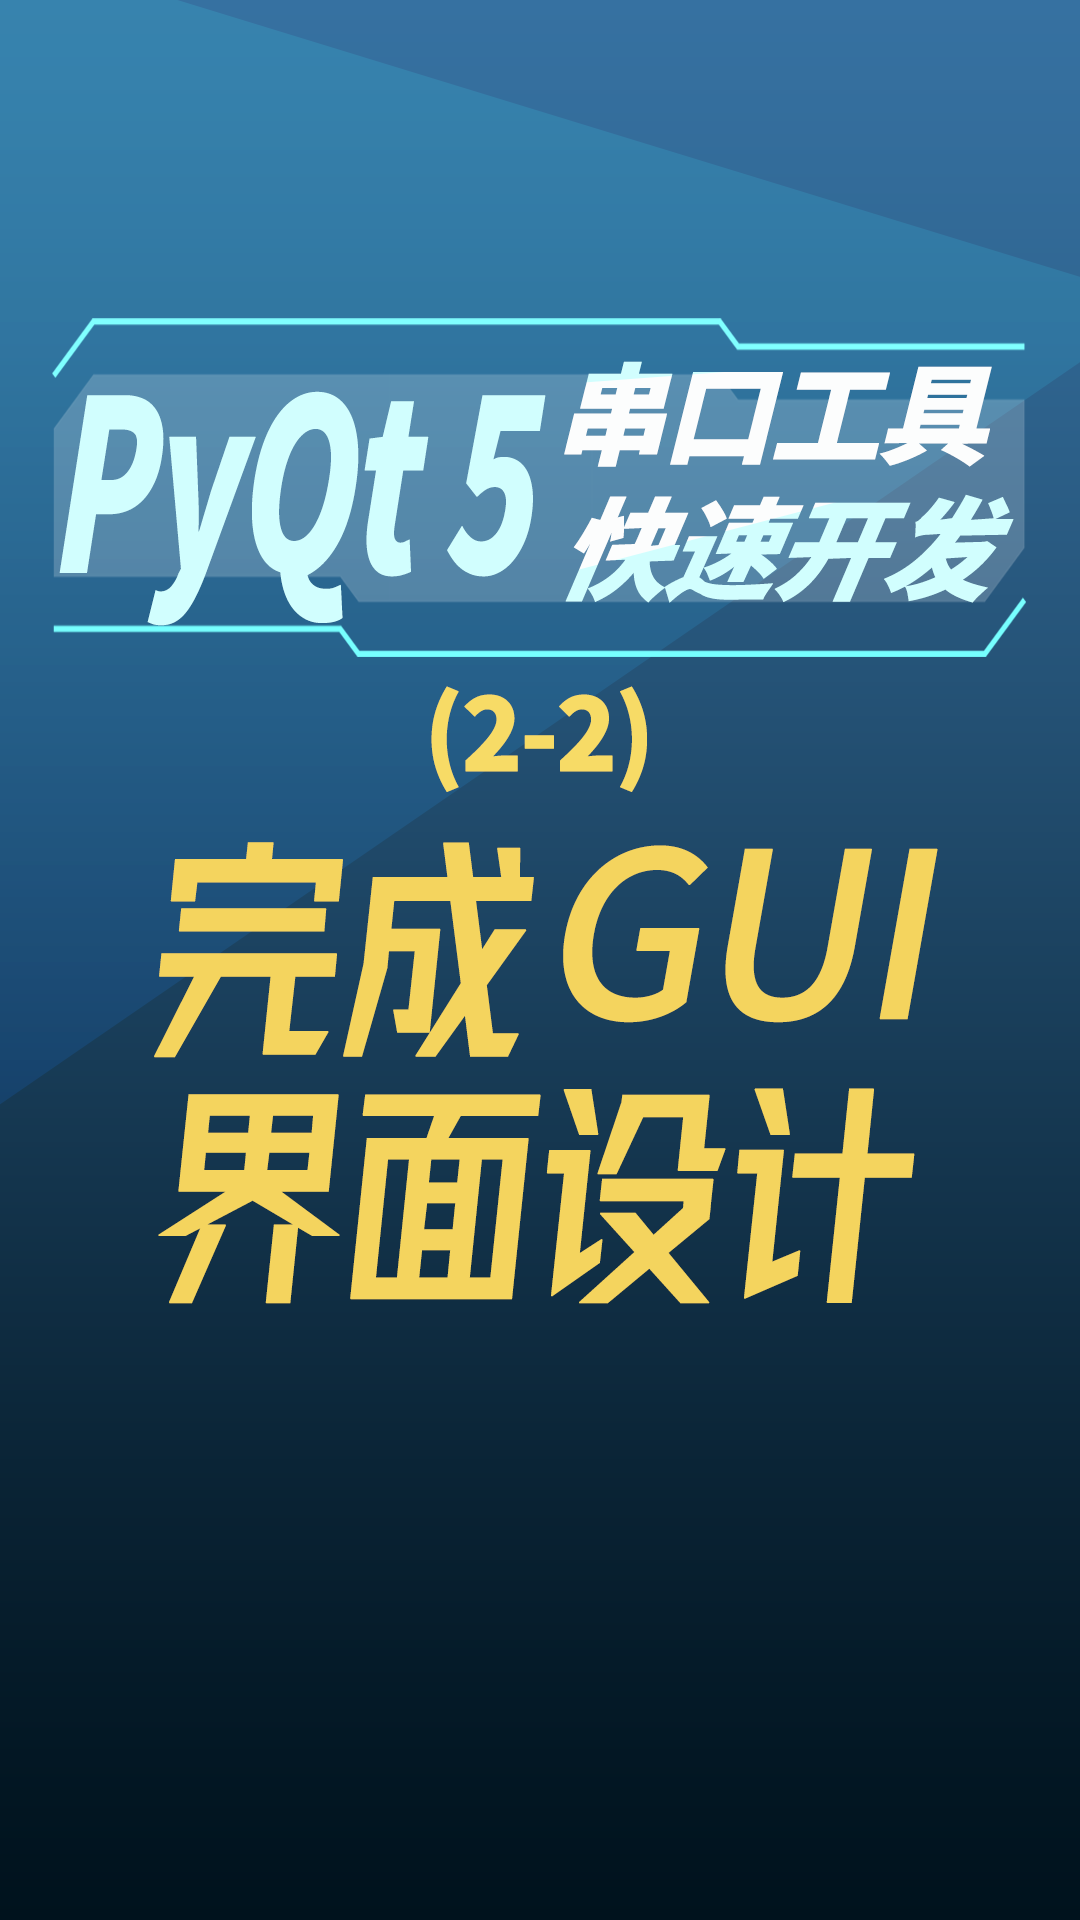 pyqt5串口工具快速开发2-2完成GUI界面设计#串口工具开发 